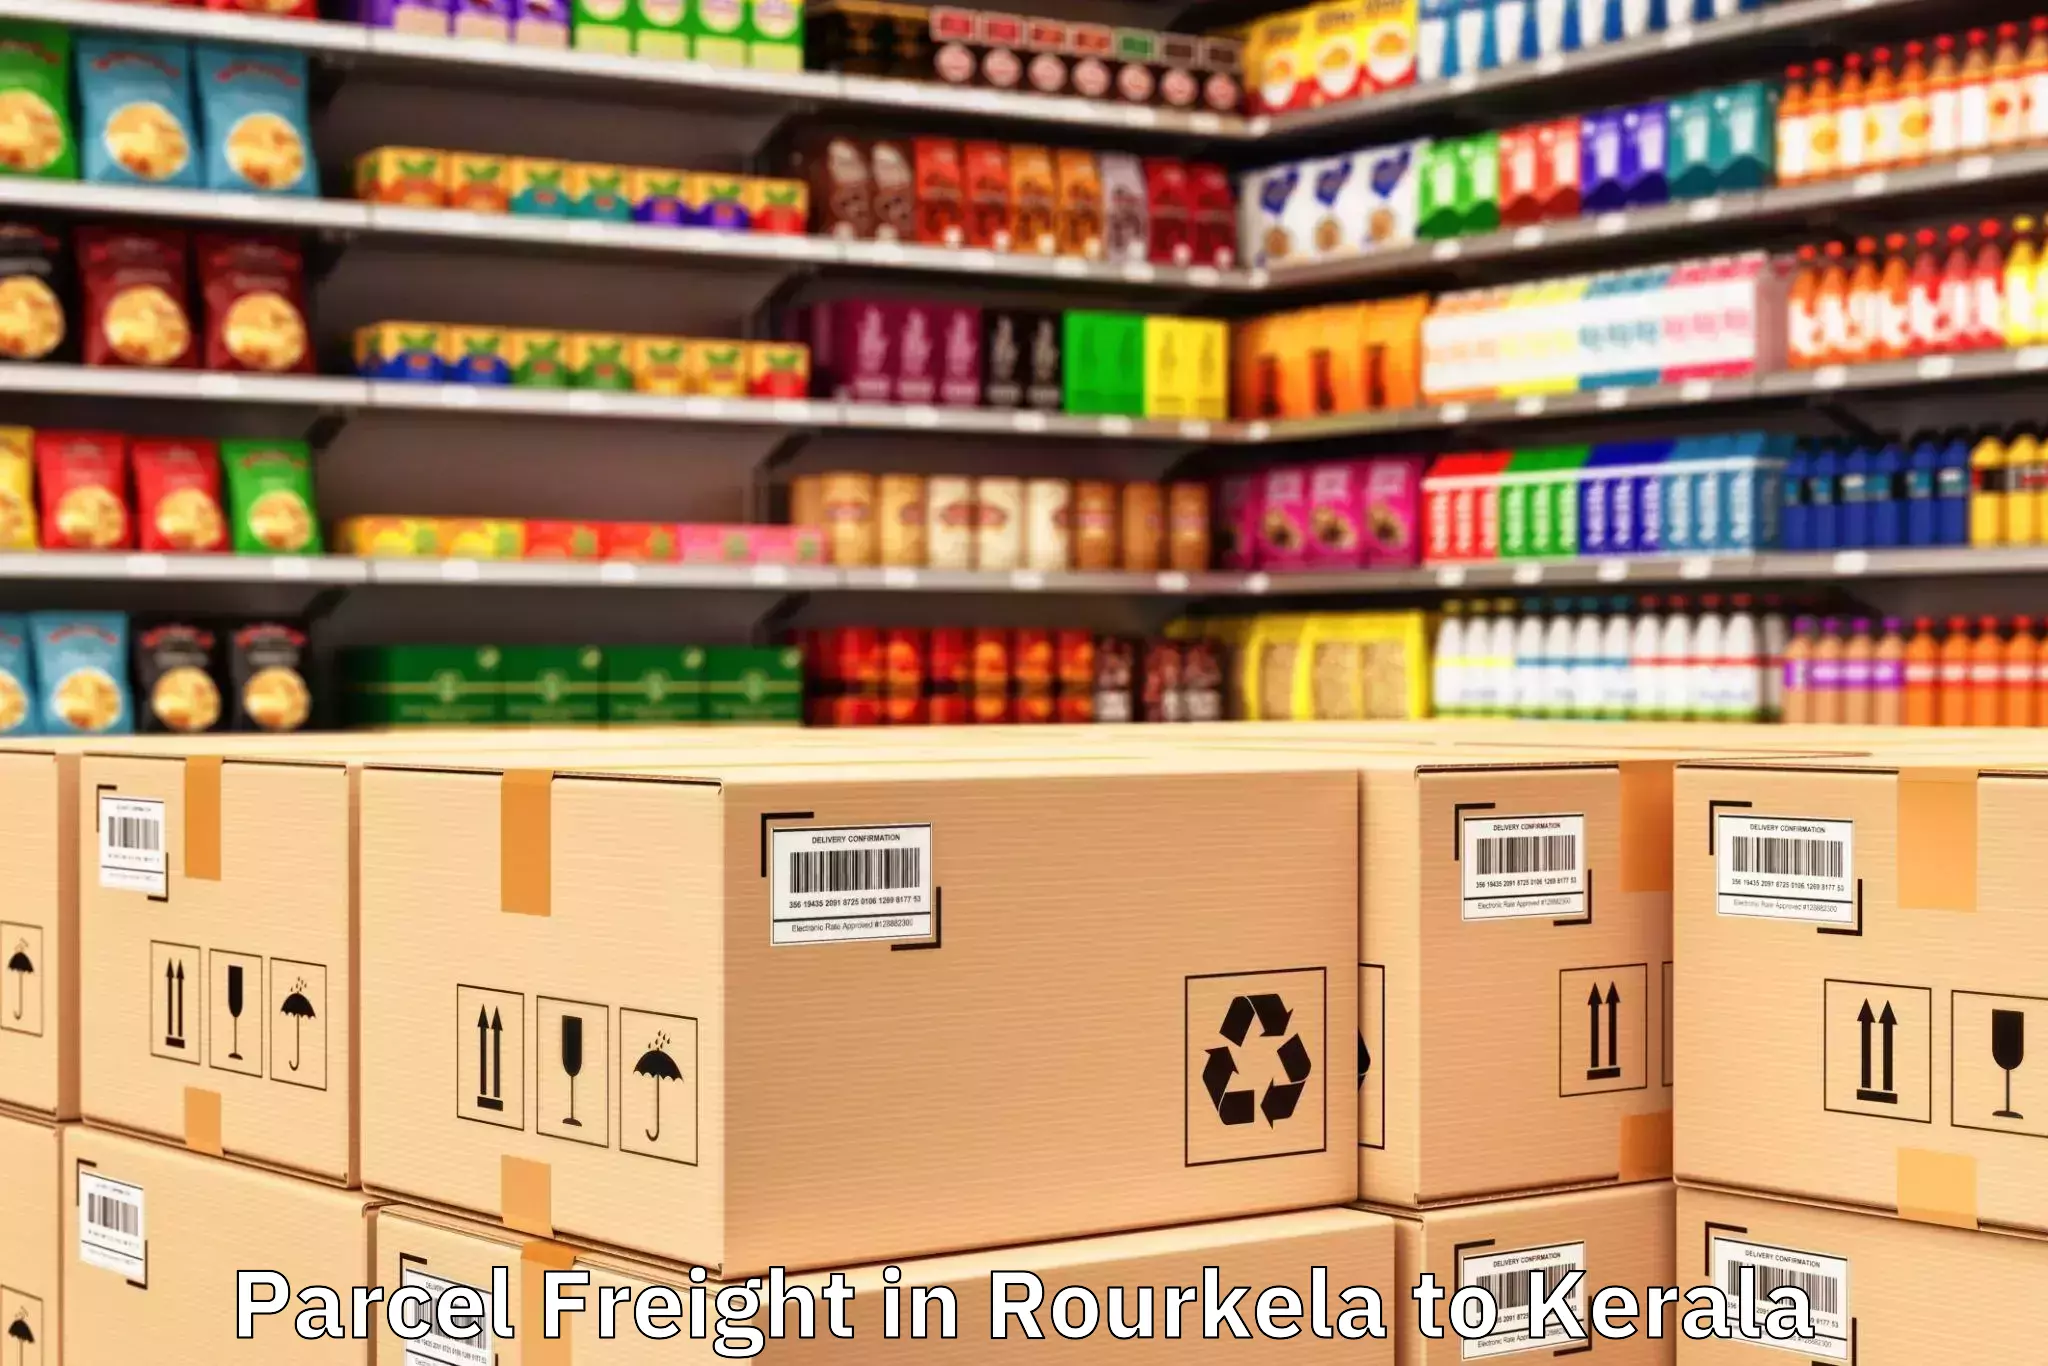 Trusted Rourkela to Hosdurg Parcel Freight